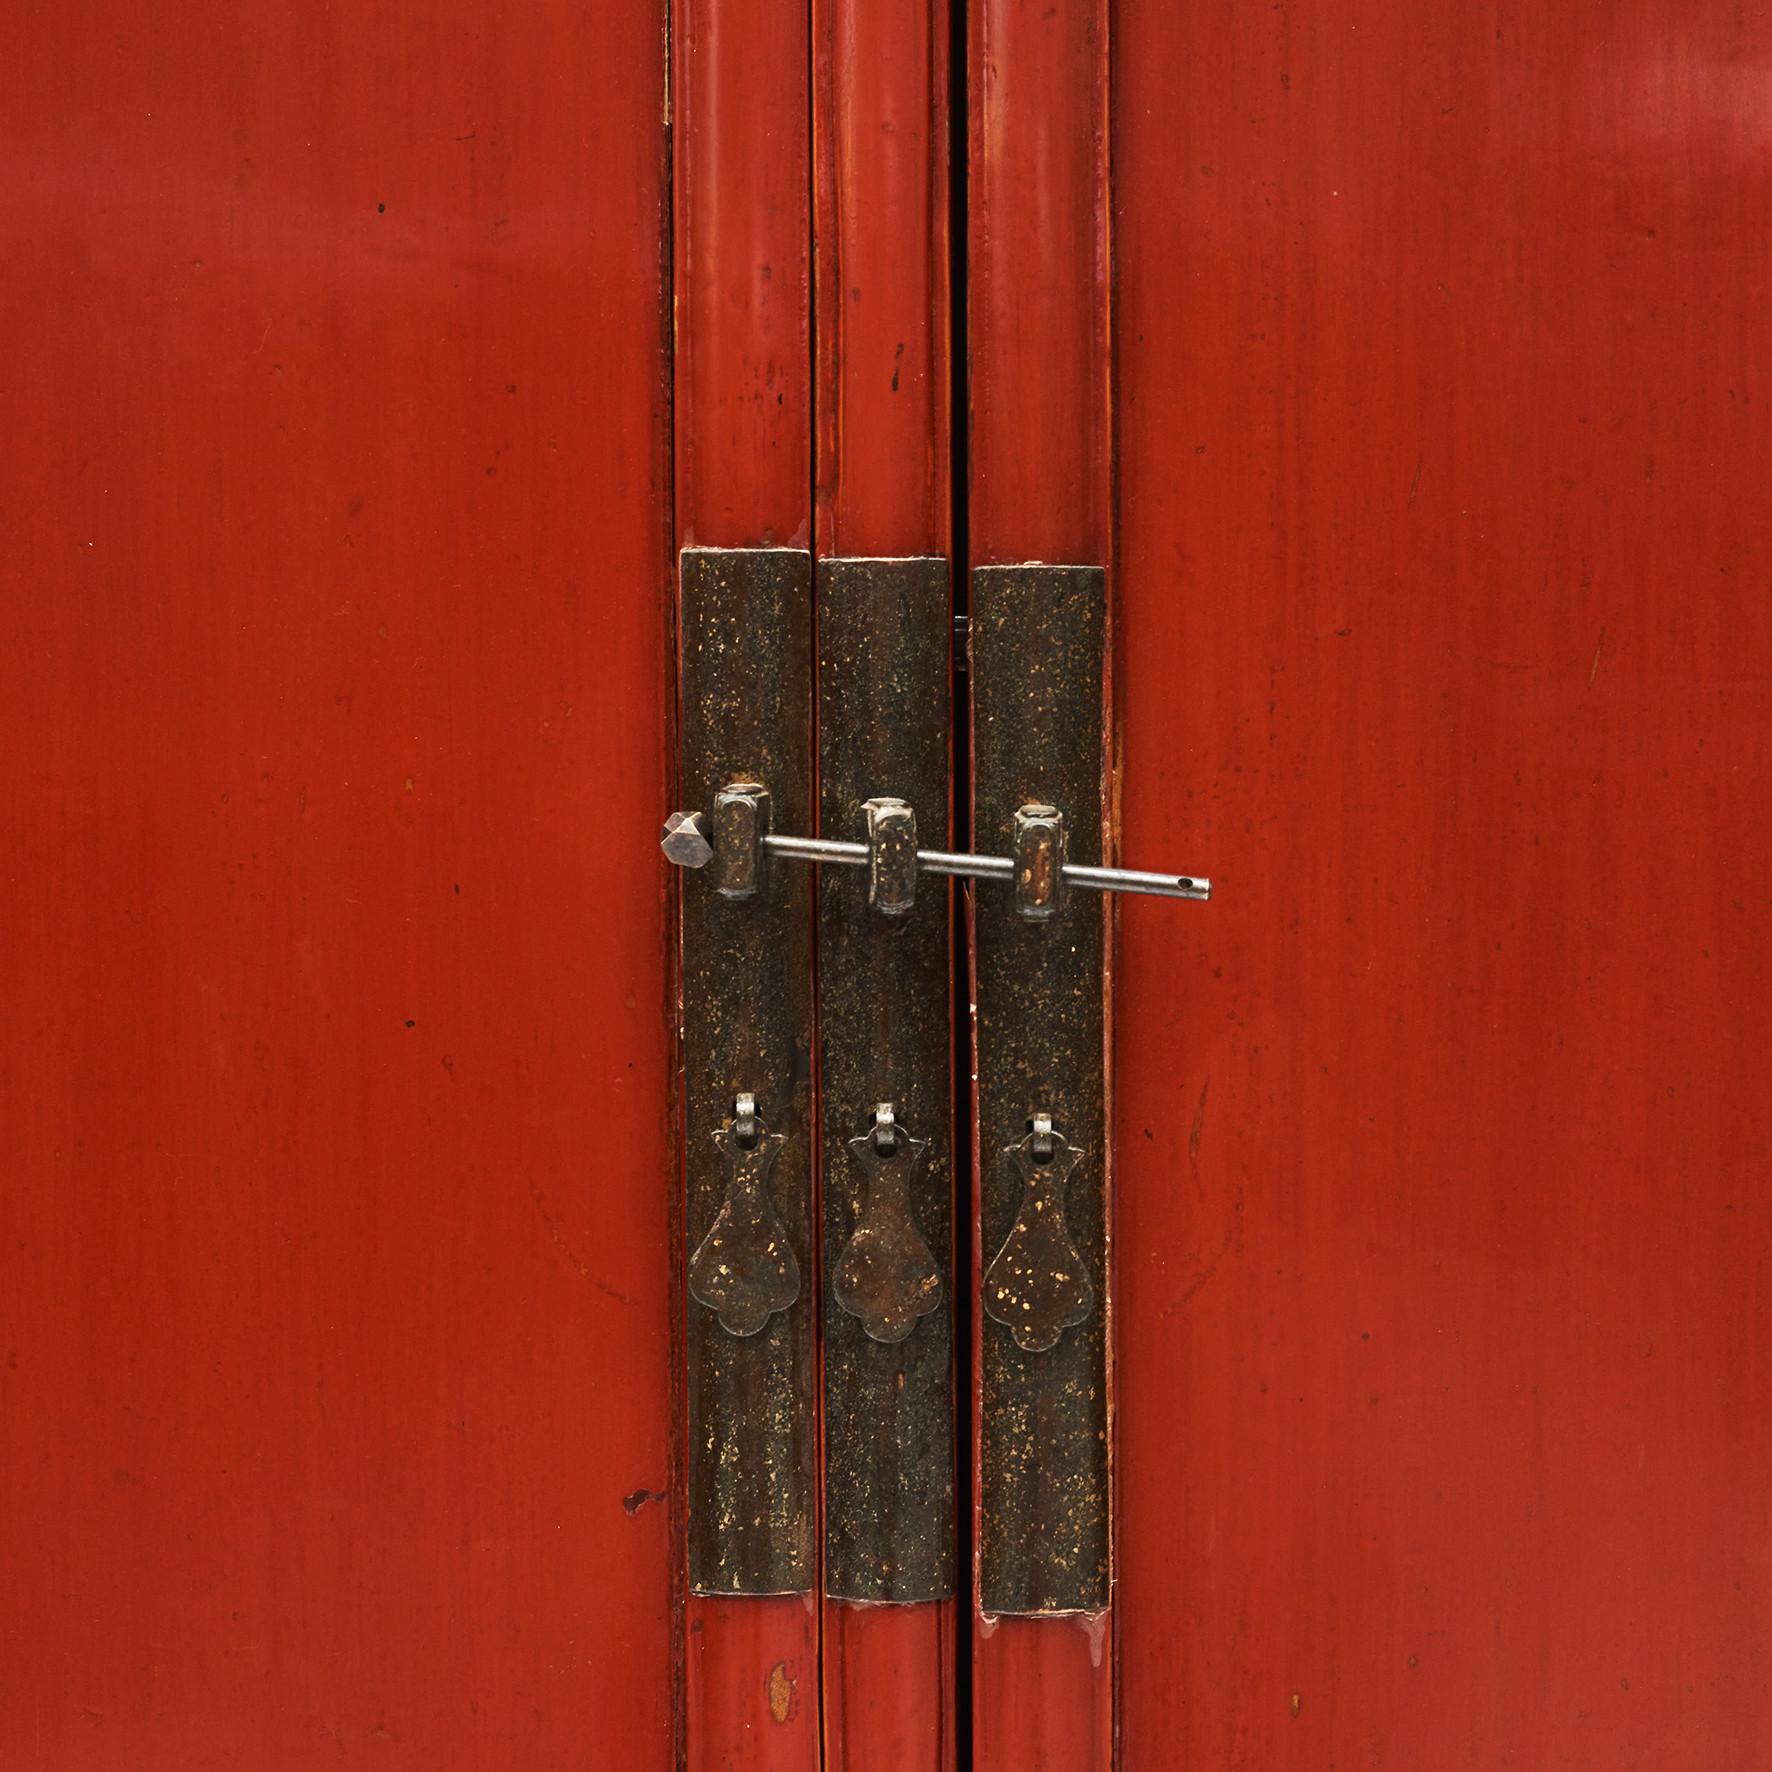 Armoire chinoise du milieu du 19e siècle. Laque rouge d'origine.
Une paire de portes munies d'une serrure en bronze s'ouvre pour révéler un intérieur à étagères, équipé de deux tiroirs.
Une armoire de style Ming, mais avec des lignes modernes,